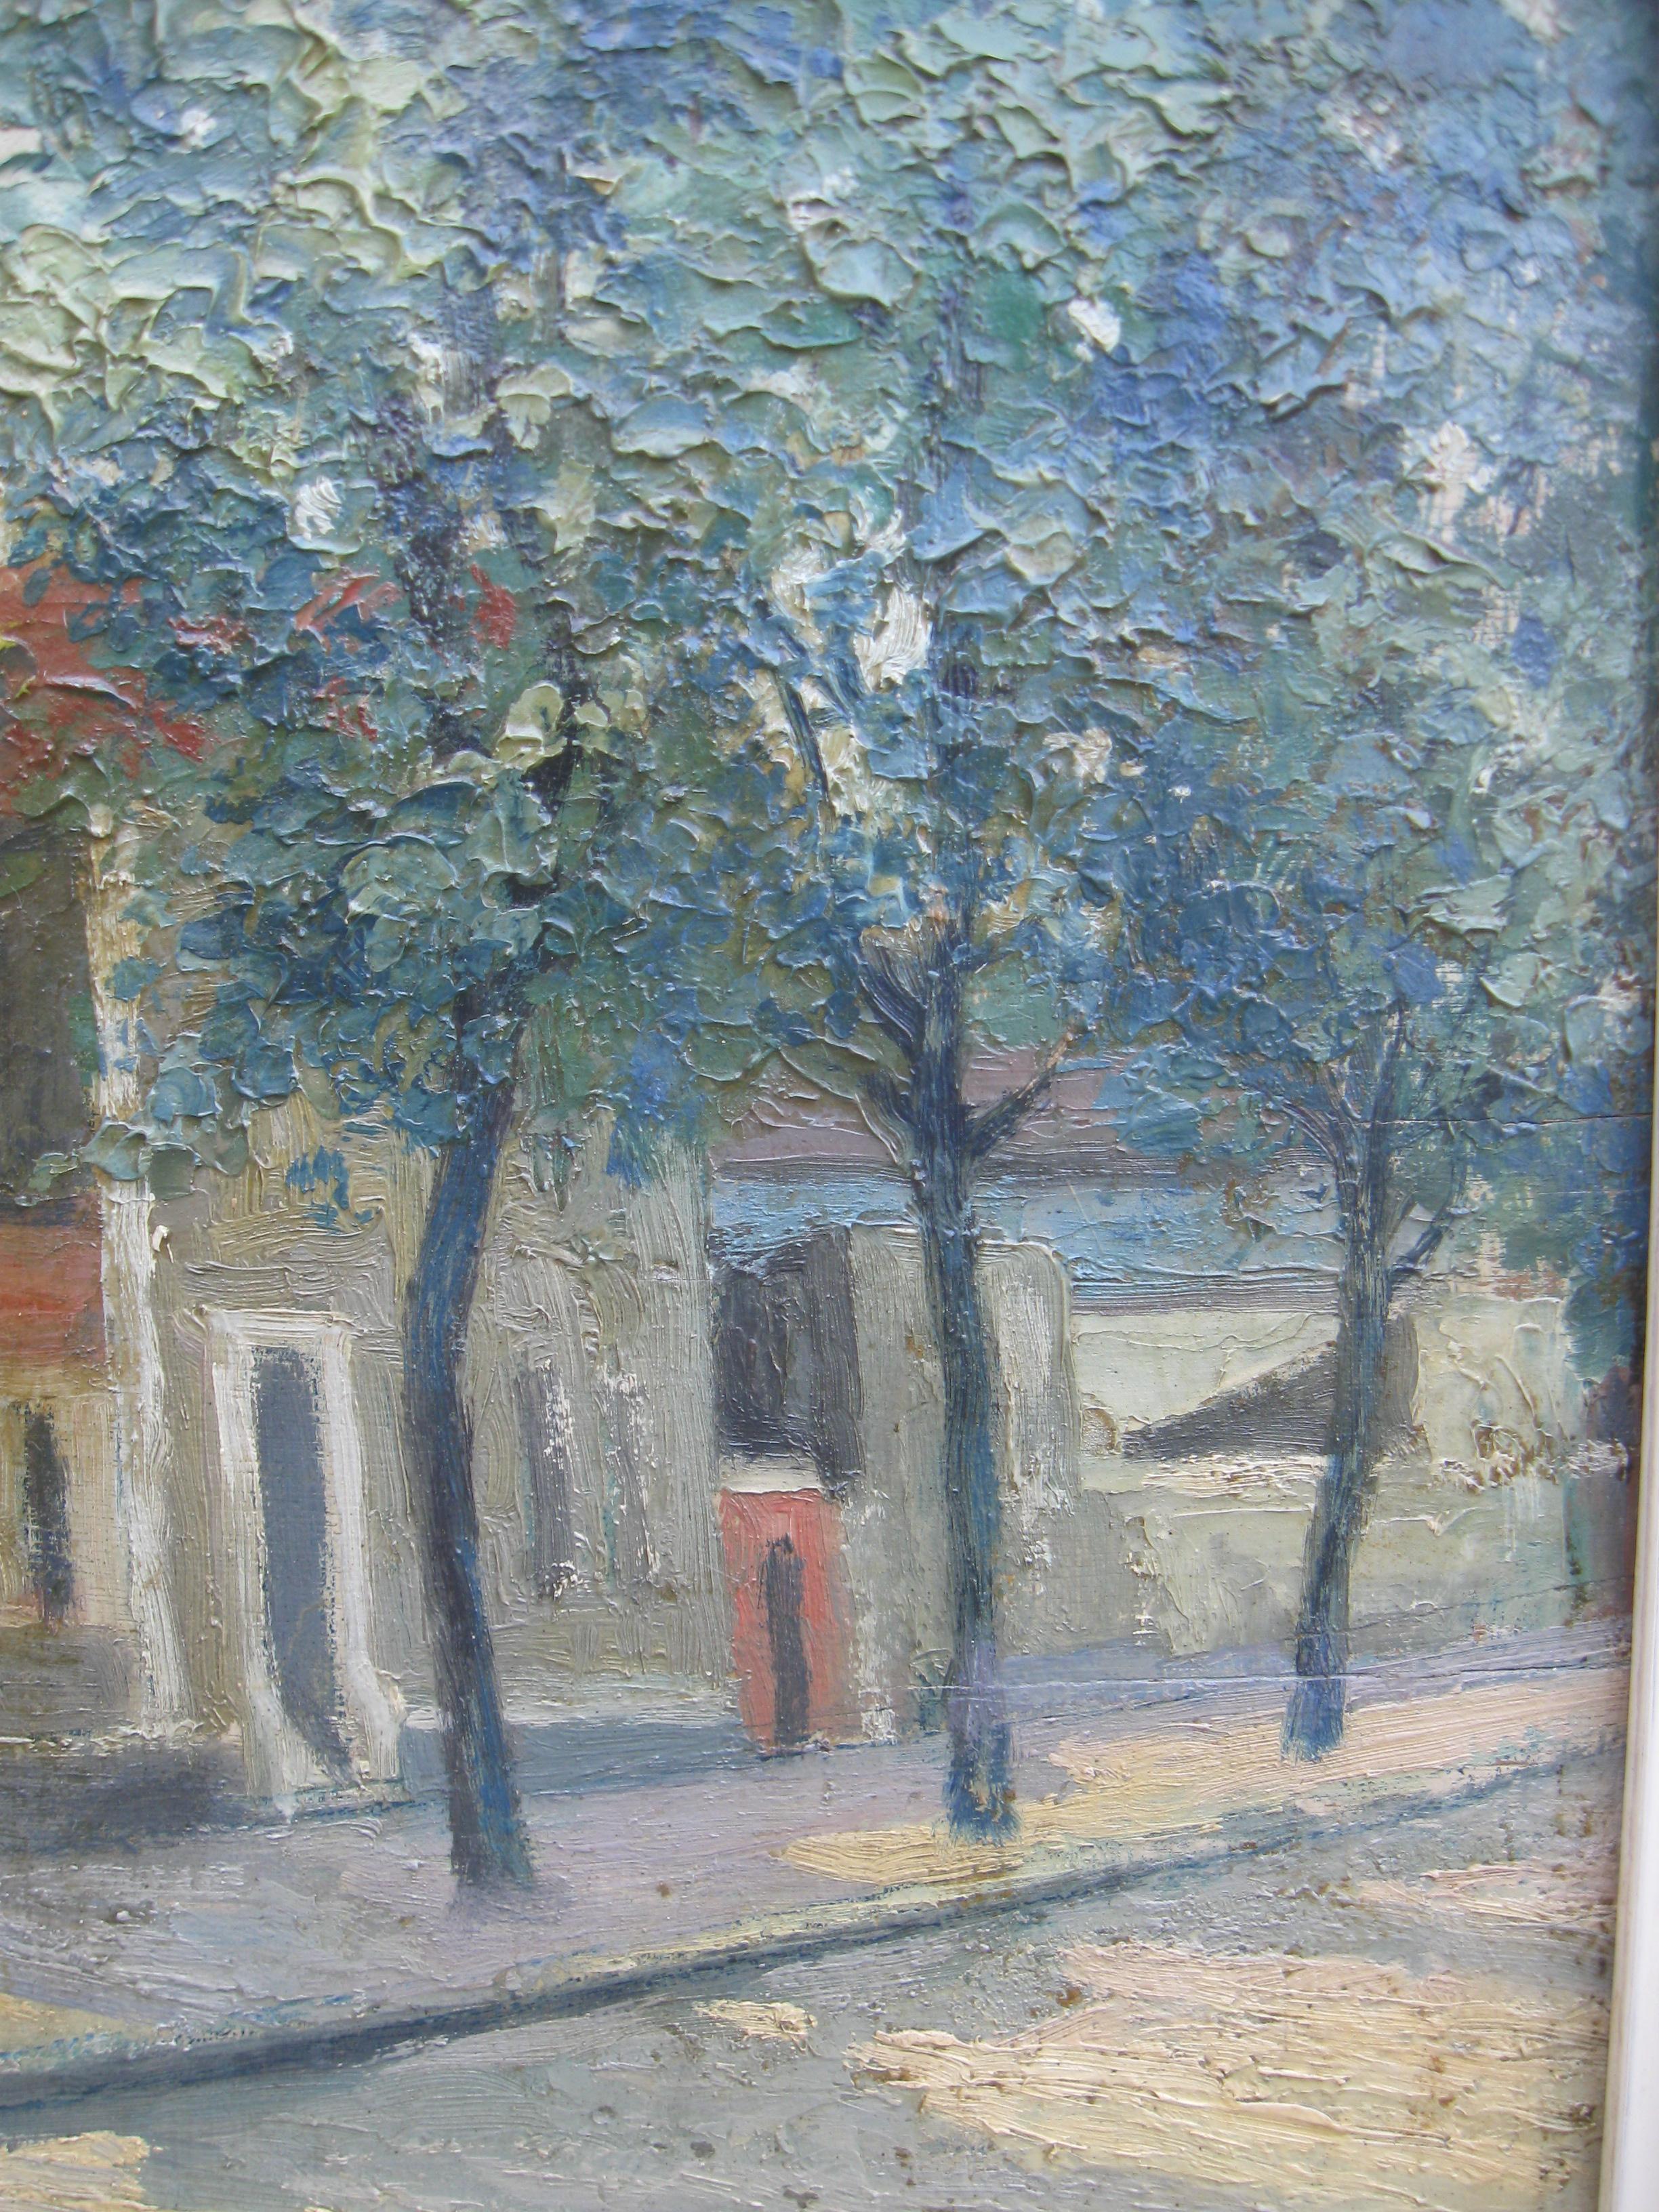 Wunderschöne impressionistische Pariser Straßenszene von dem berühmten französischen Künstler und Designer Rene Sim Lacaze (1901-2000).
Öl auf Karton 60cm x 68cm
Guter Galerierahmen 74cm x 82cm
Das abgebildete Gebäude ist das Atelier des Künstlers